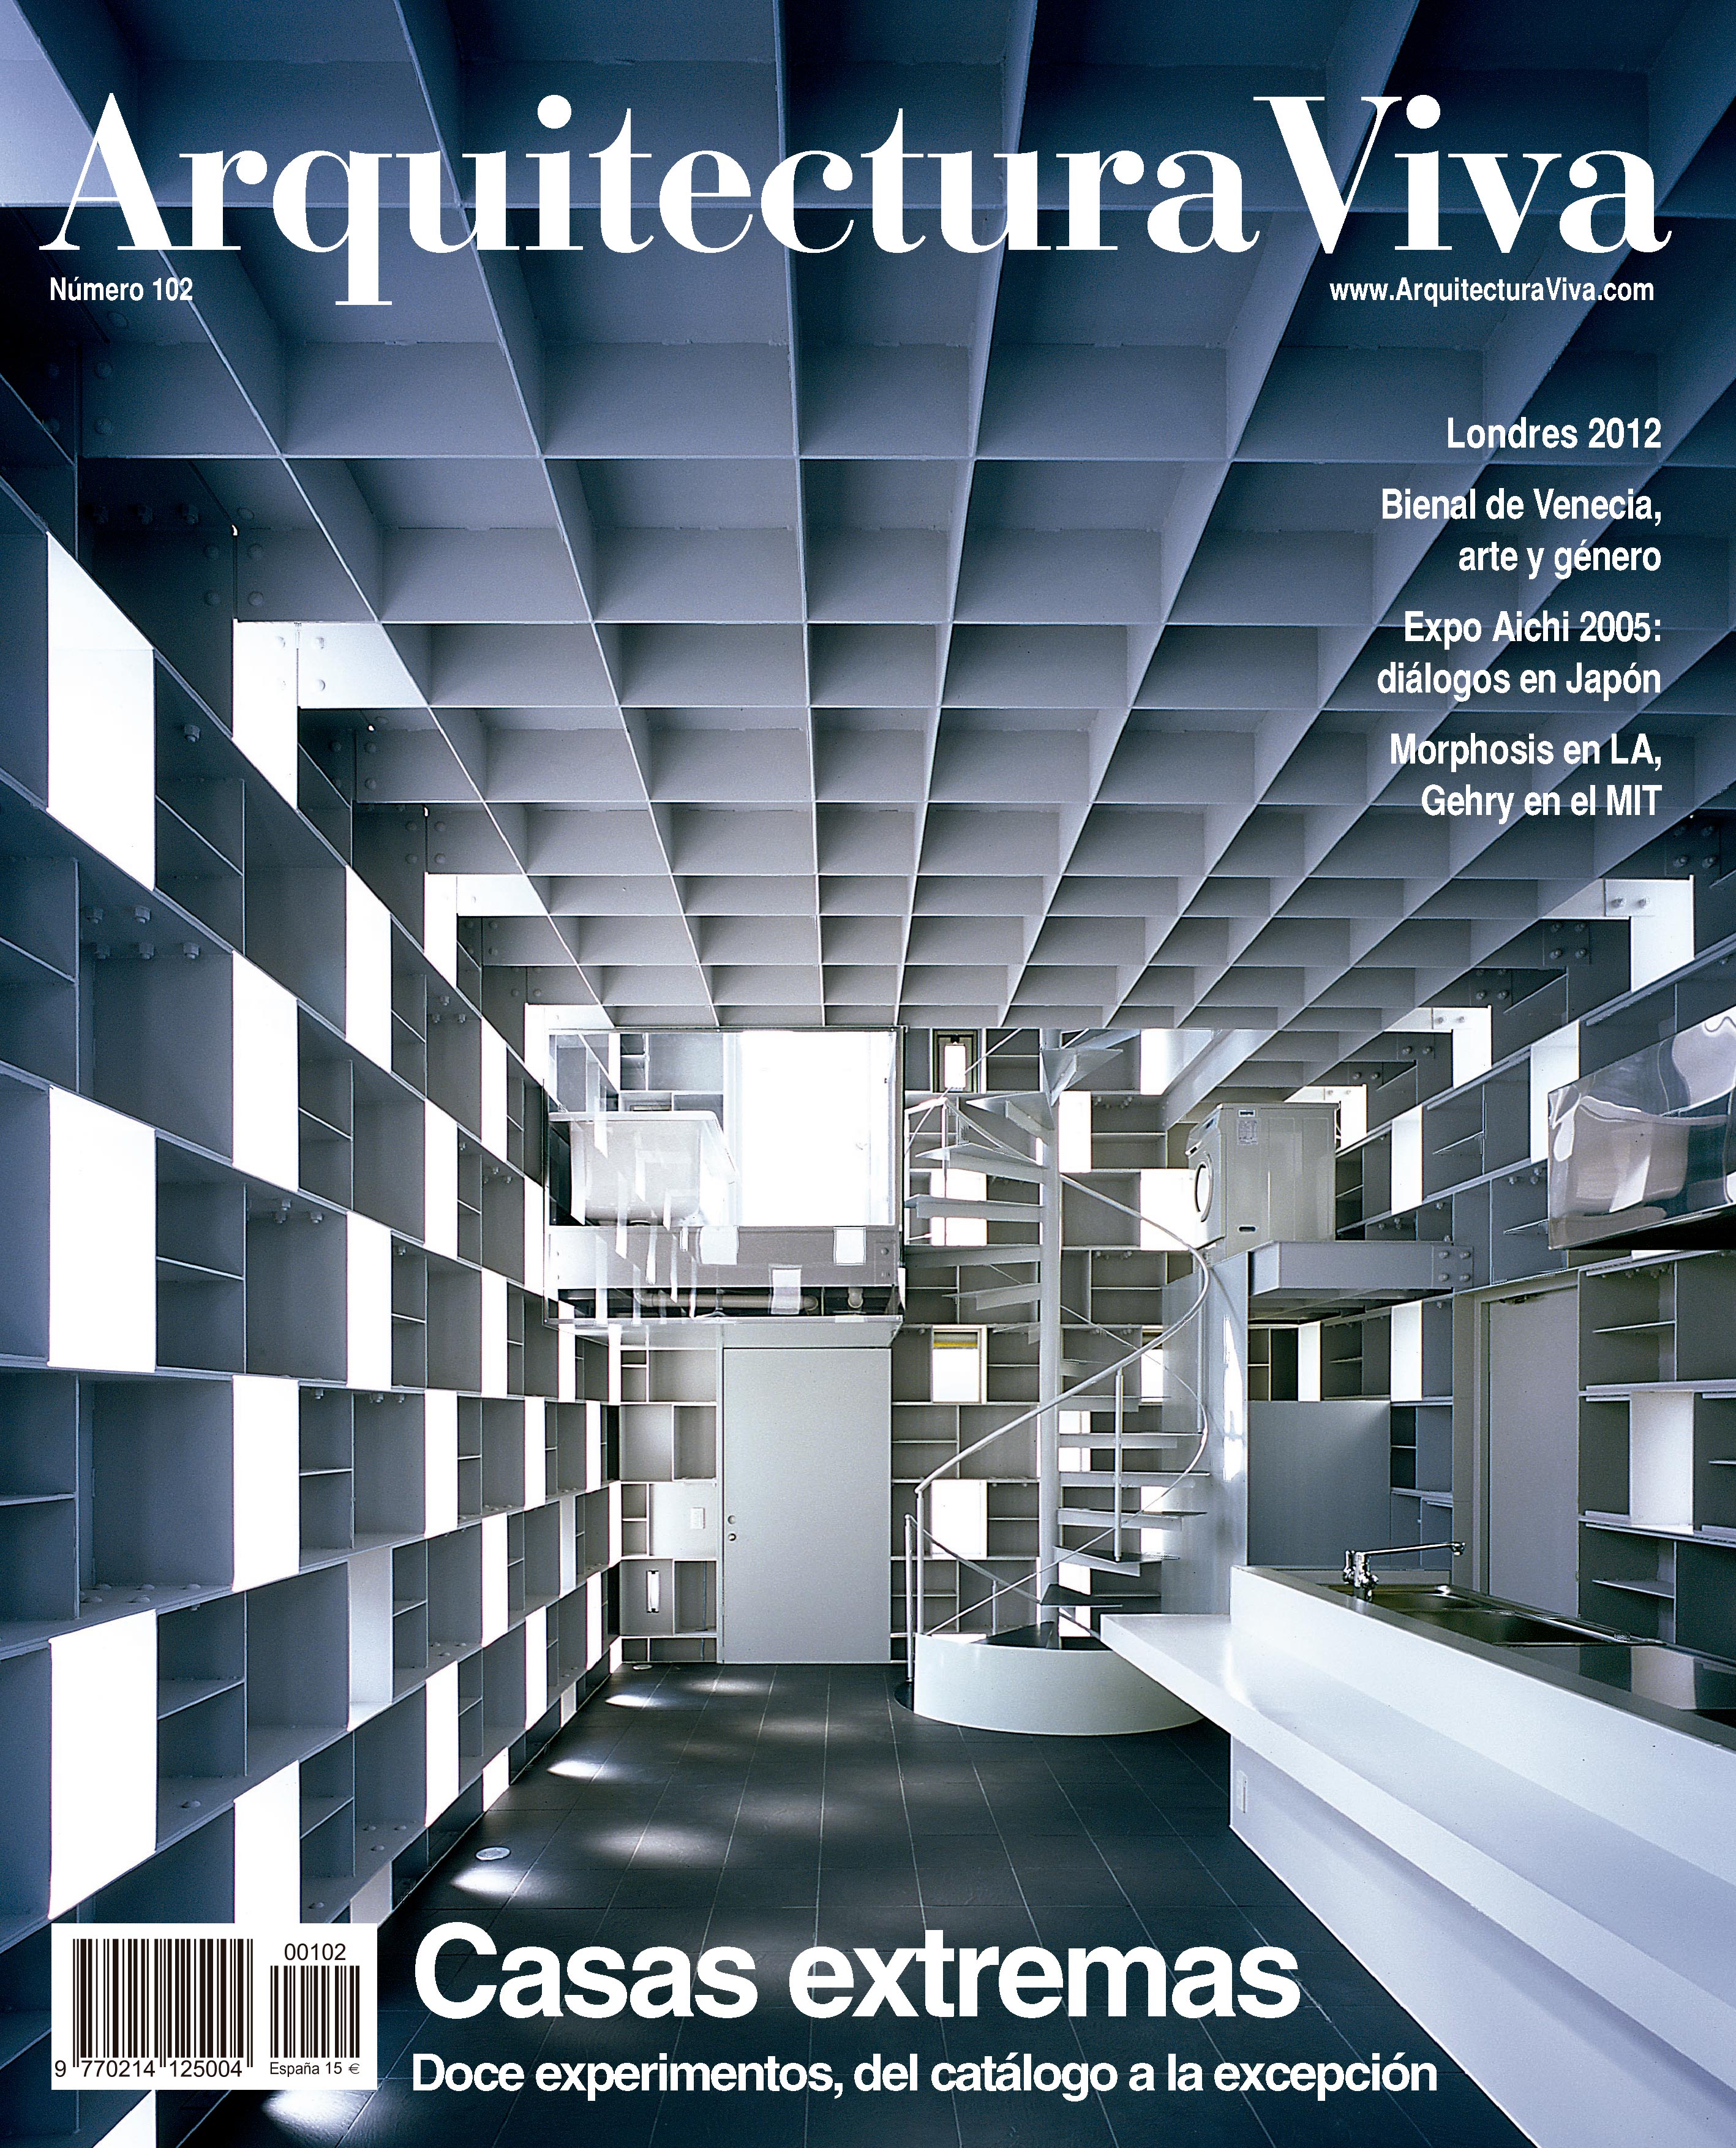 Arquitectura Viva 102 - Casas extremas Doce experimentos, del catálogo a la  excepción | Arquitectura Viva